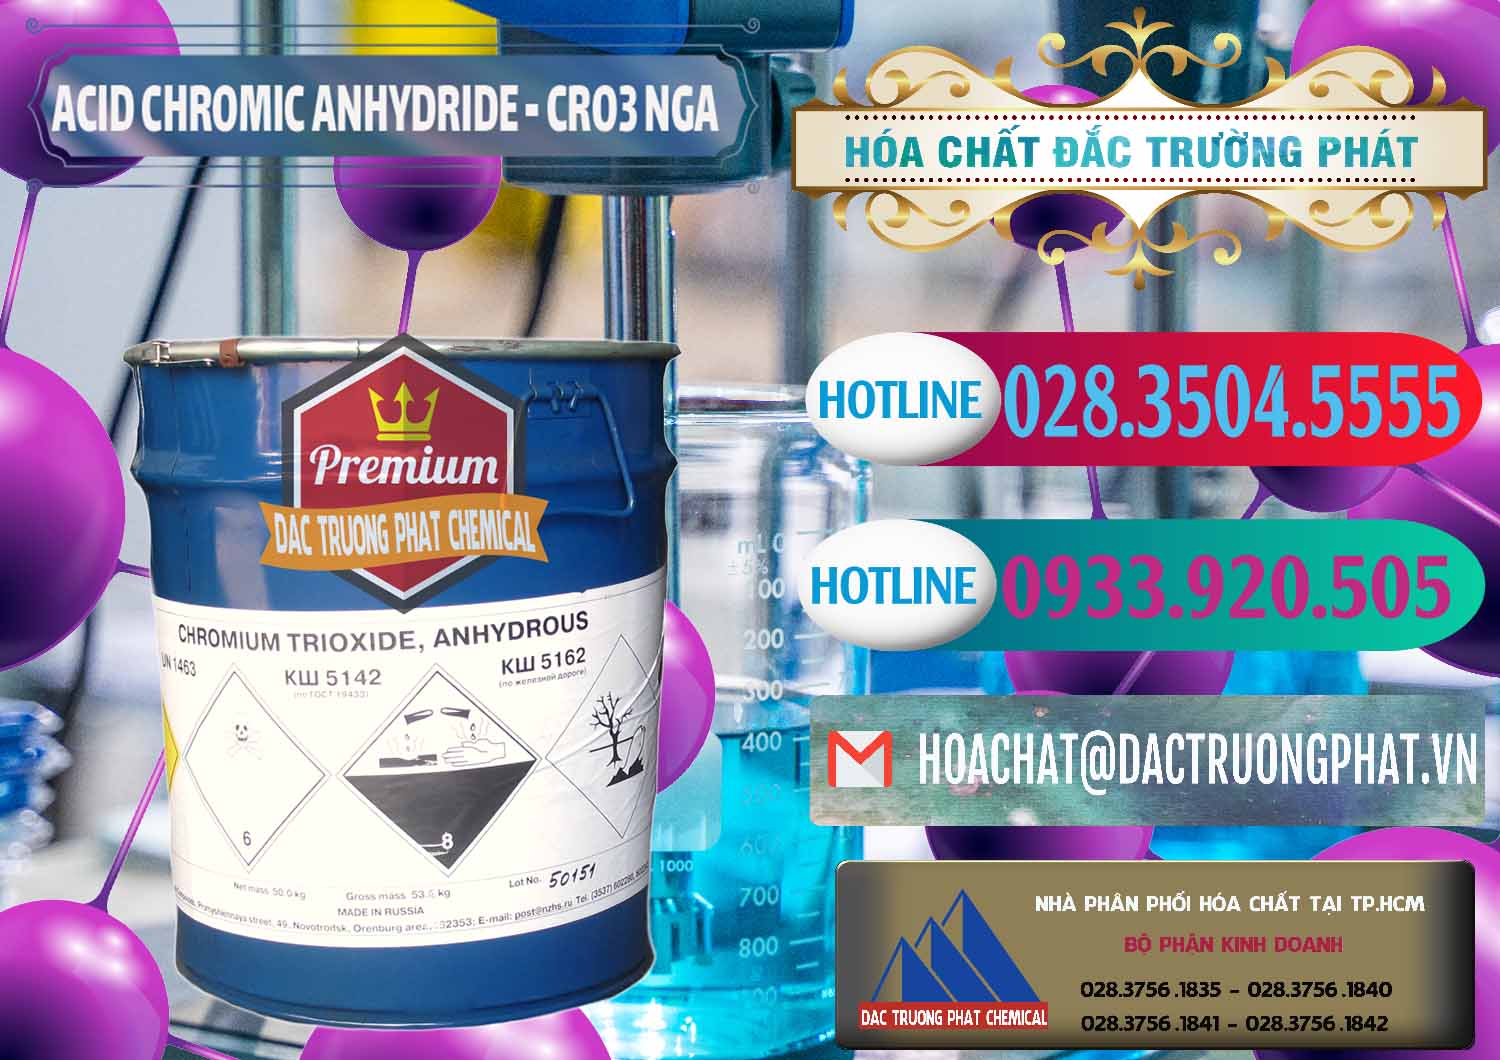 Nơi bán và cung ứng Acid Chromic Anhydride - Cromic CRO3 Nga Russia - 0006 - Đơn vị kinh doanh ( phân phối ) hóa chất tại TP.HCM - truongphat.vn